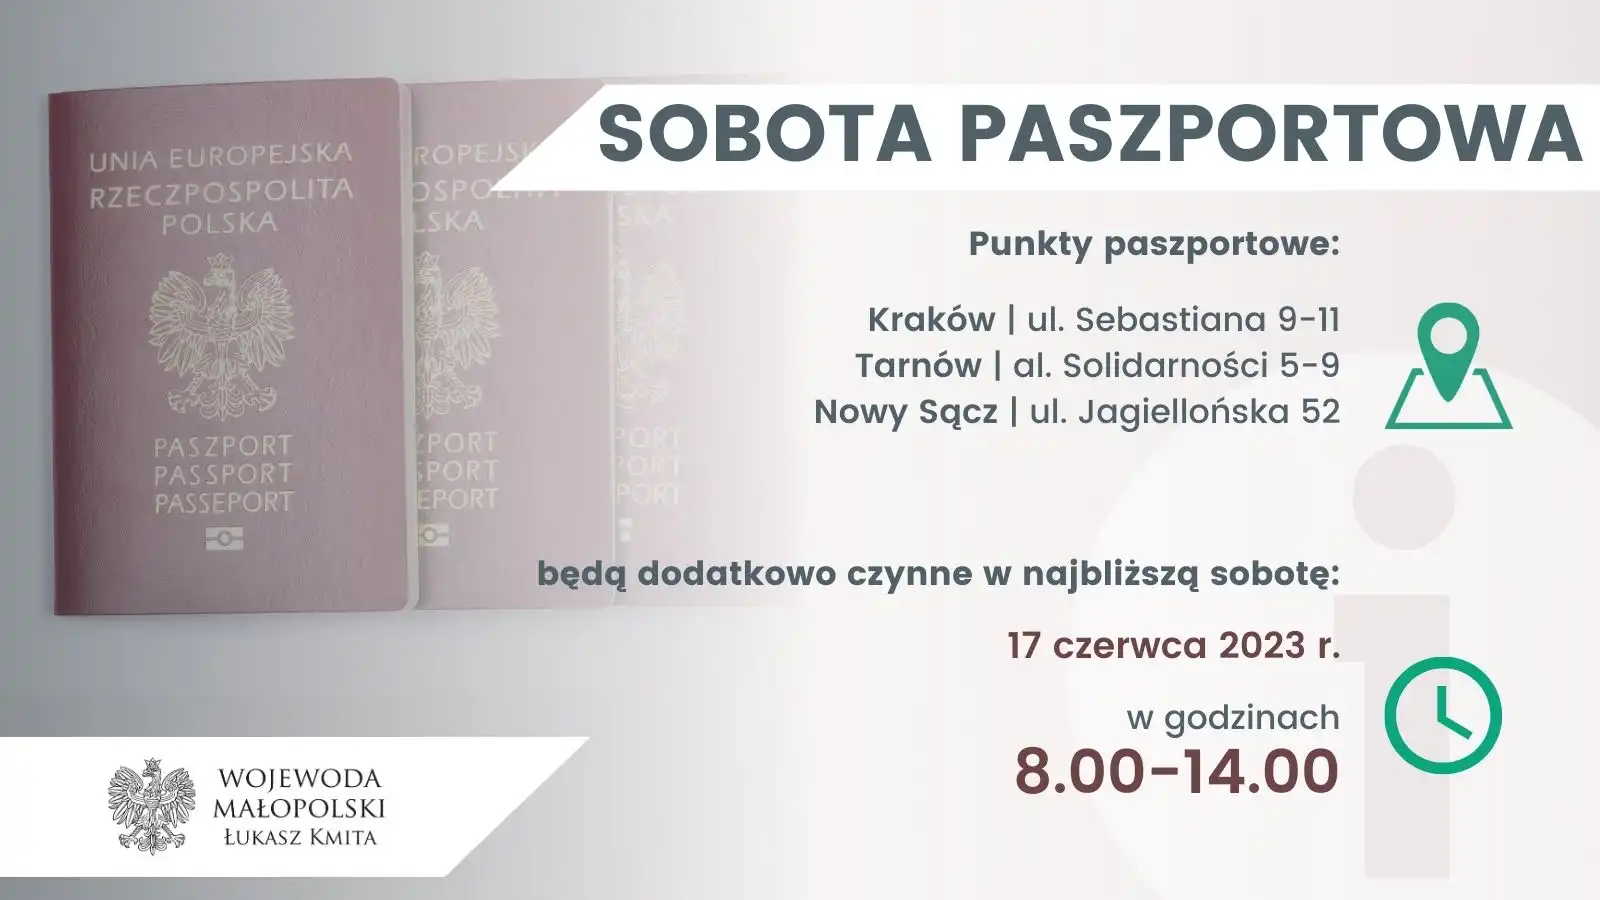 Złóż wniosek paszportowy lub odbierz gotowy dokument. W najbliższą sobotę otwarte będą punkty w Krakowie Tarnowie i Nowym Sączu